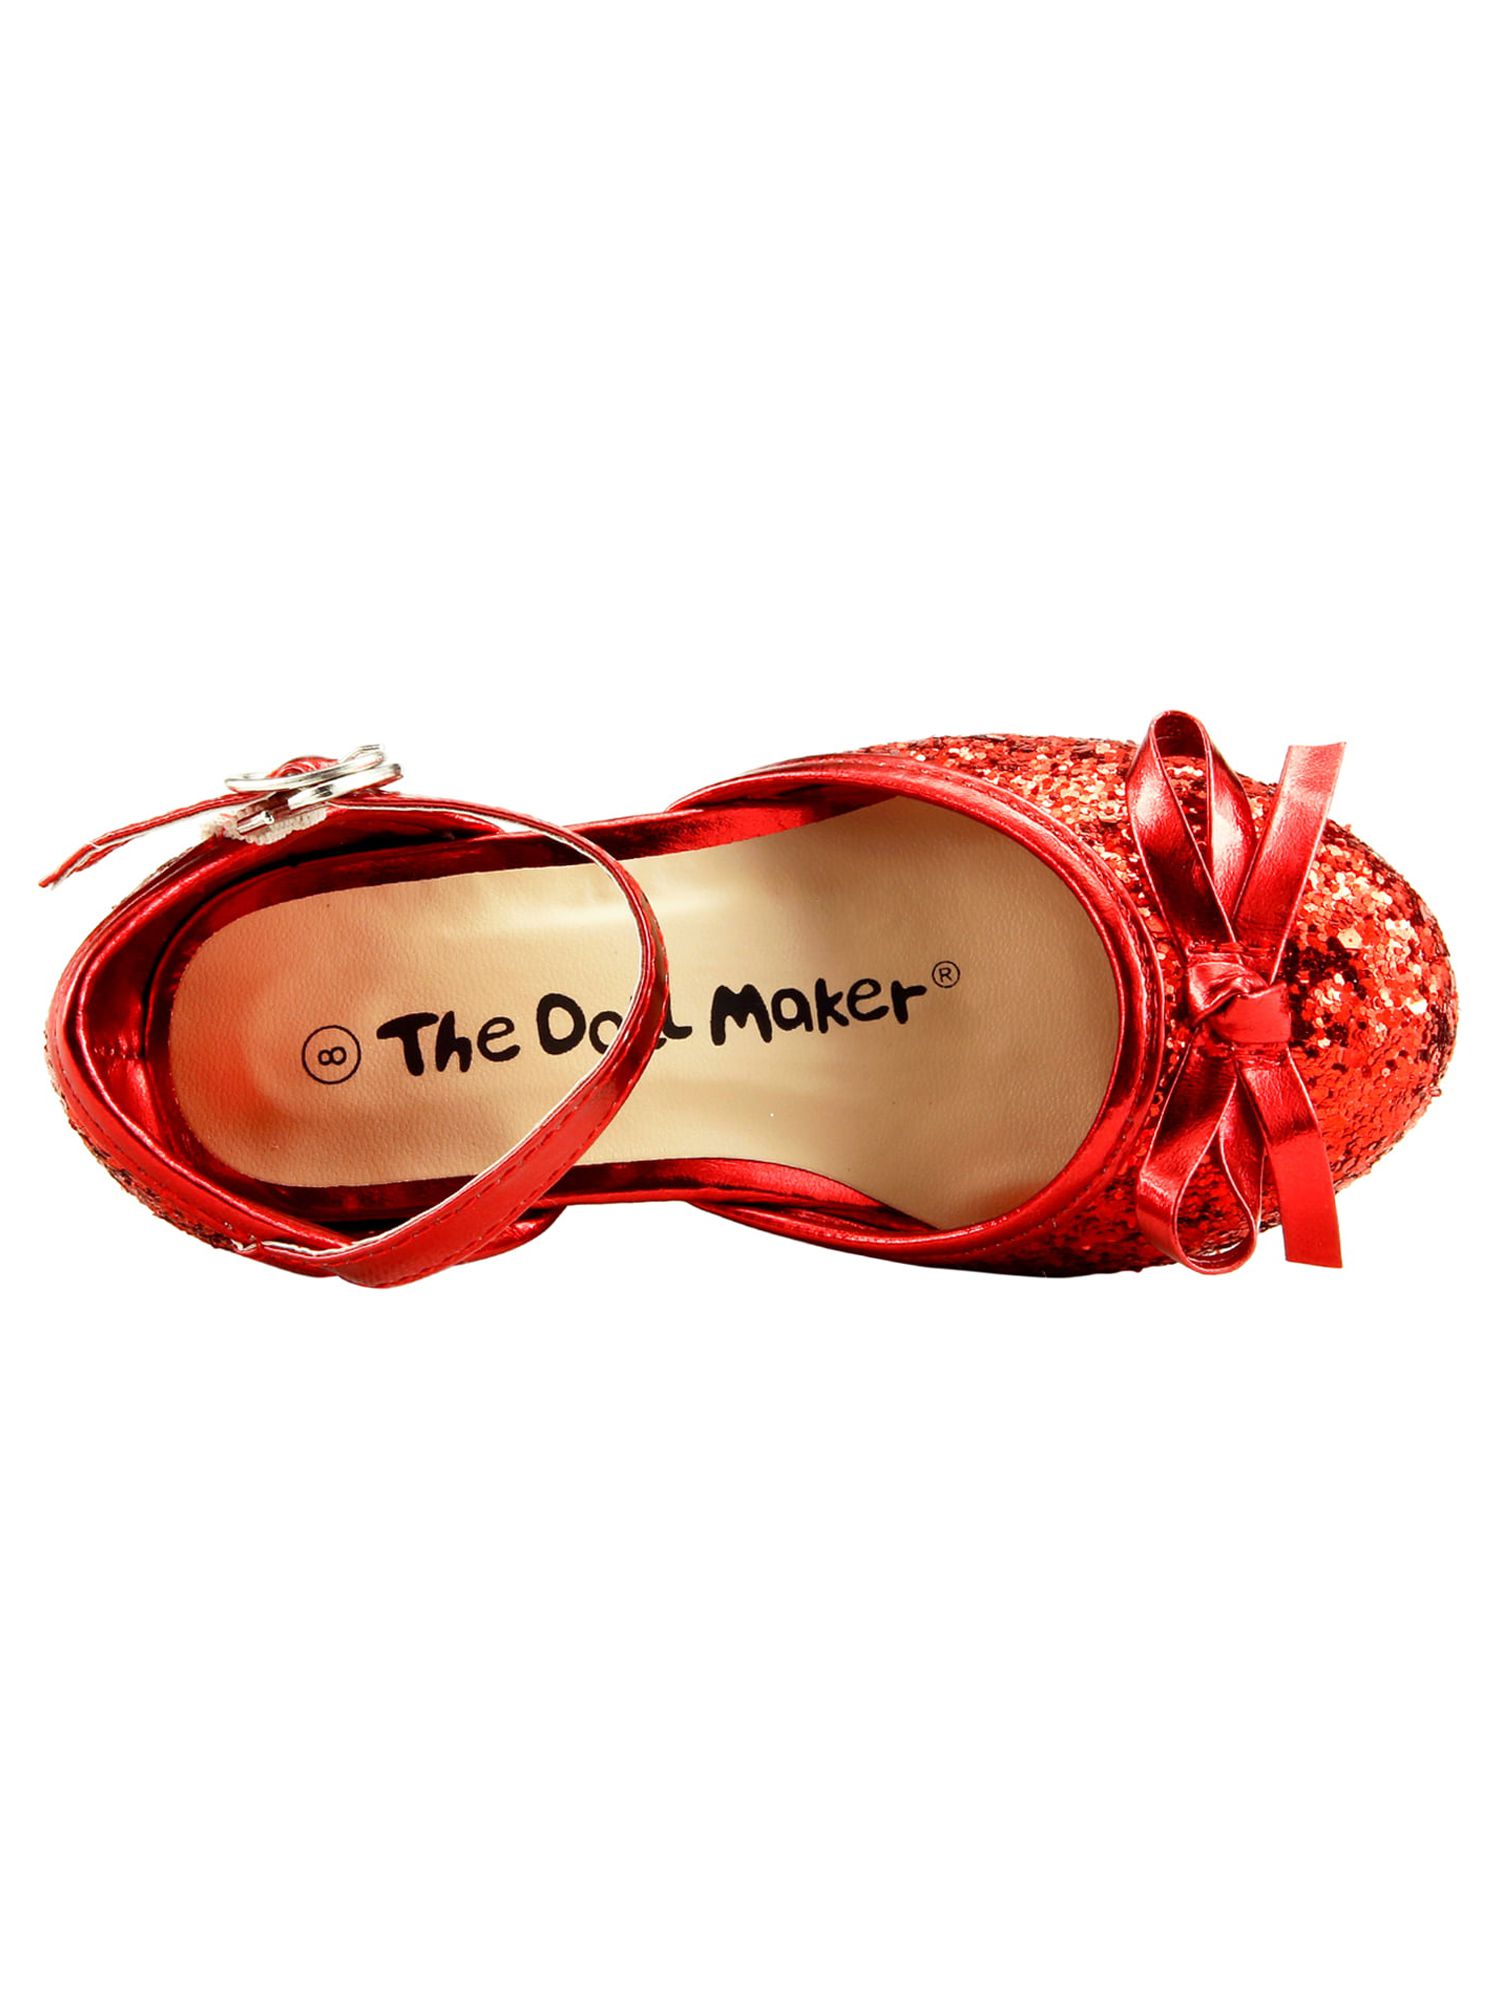 The Doll Maker Glitter Pump (Toddler Girls & Little Girls) - image 3 of 7